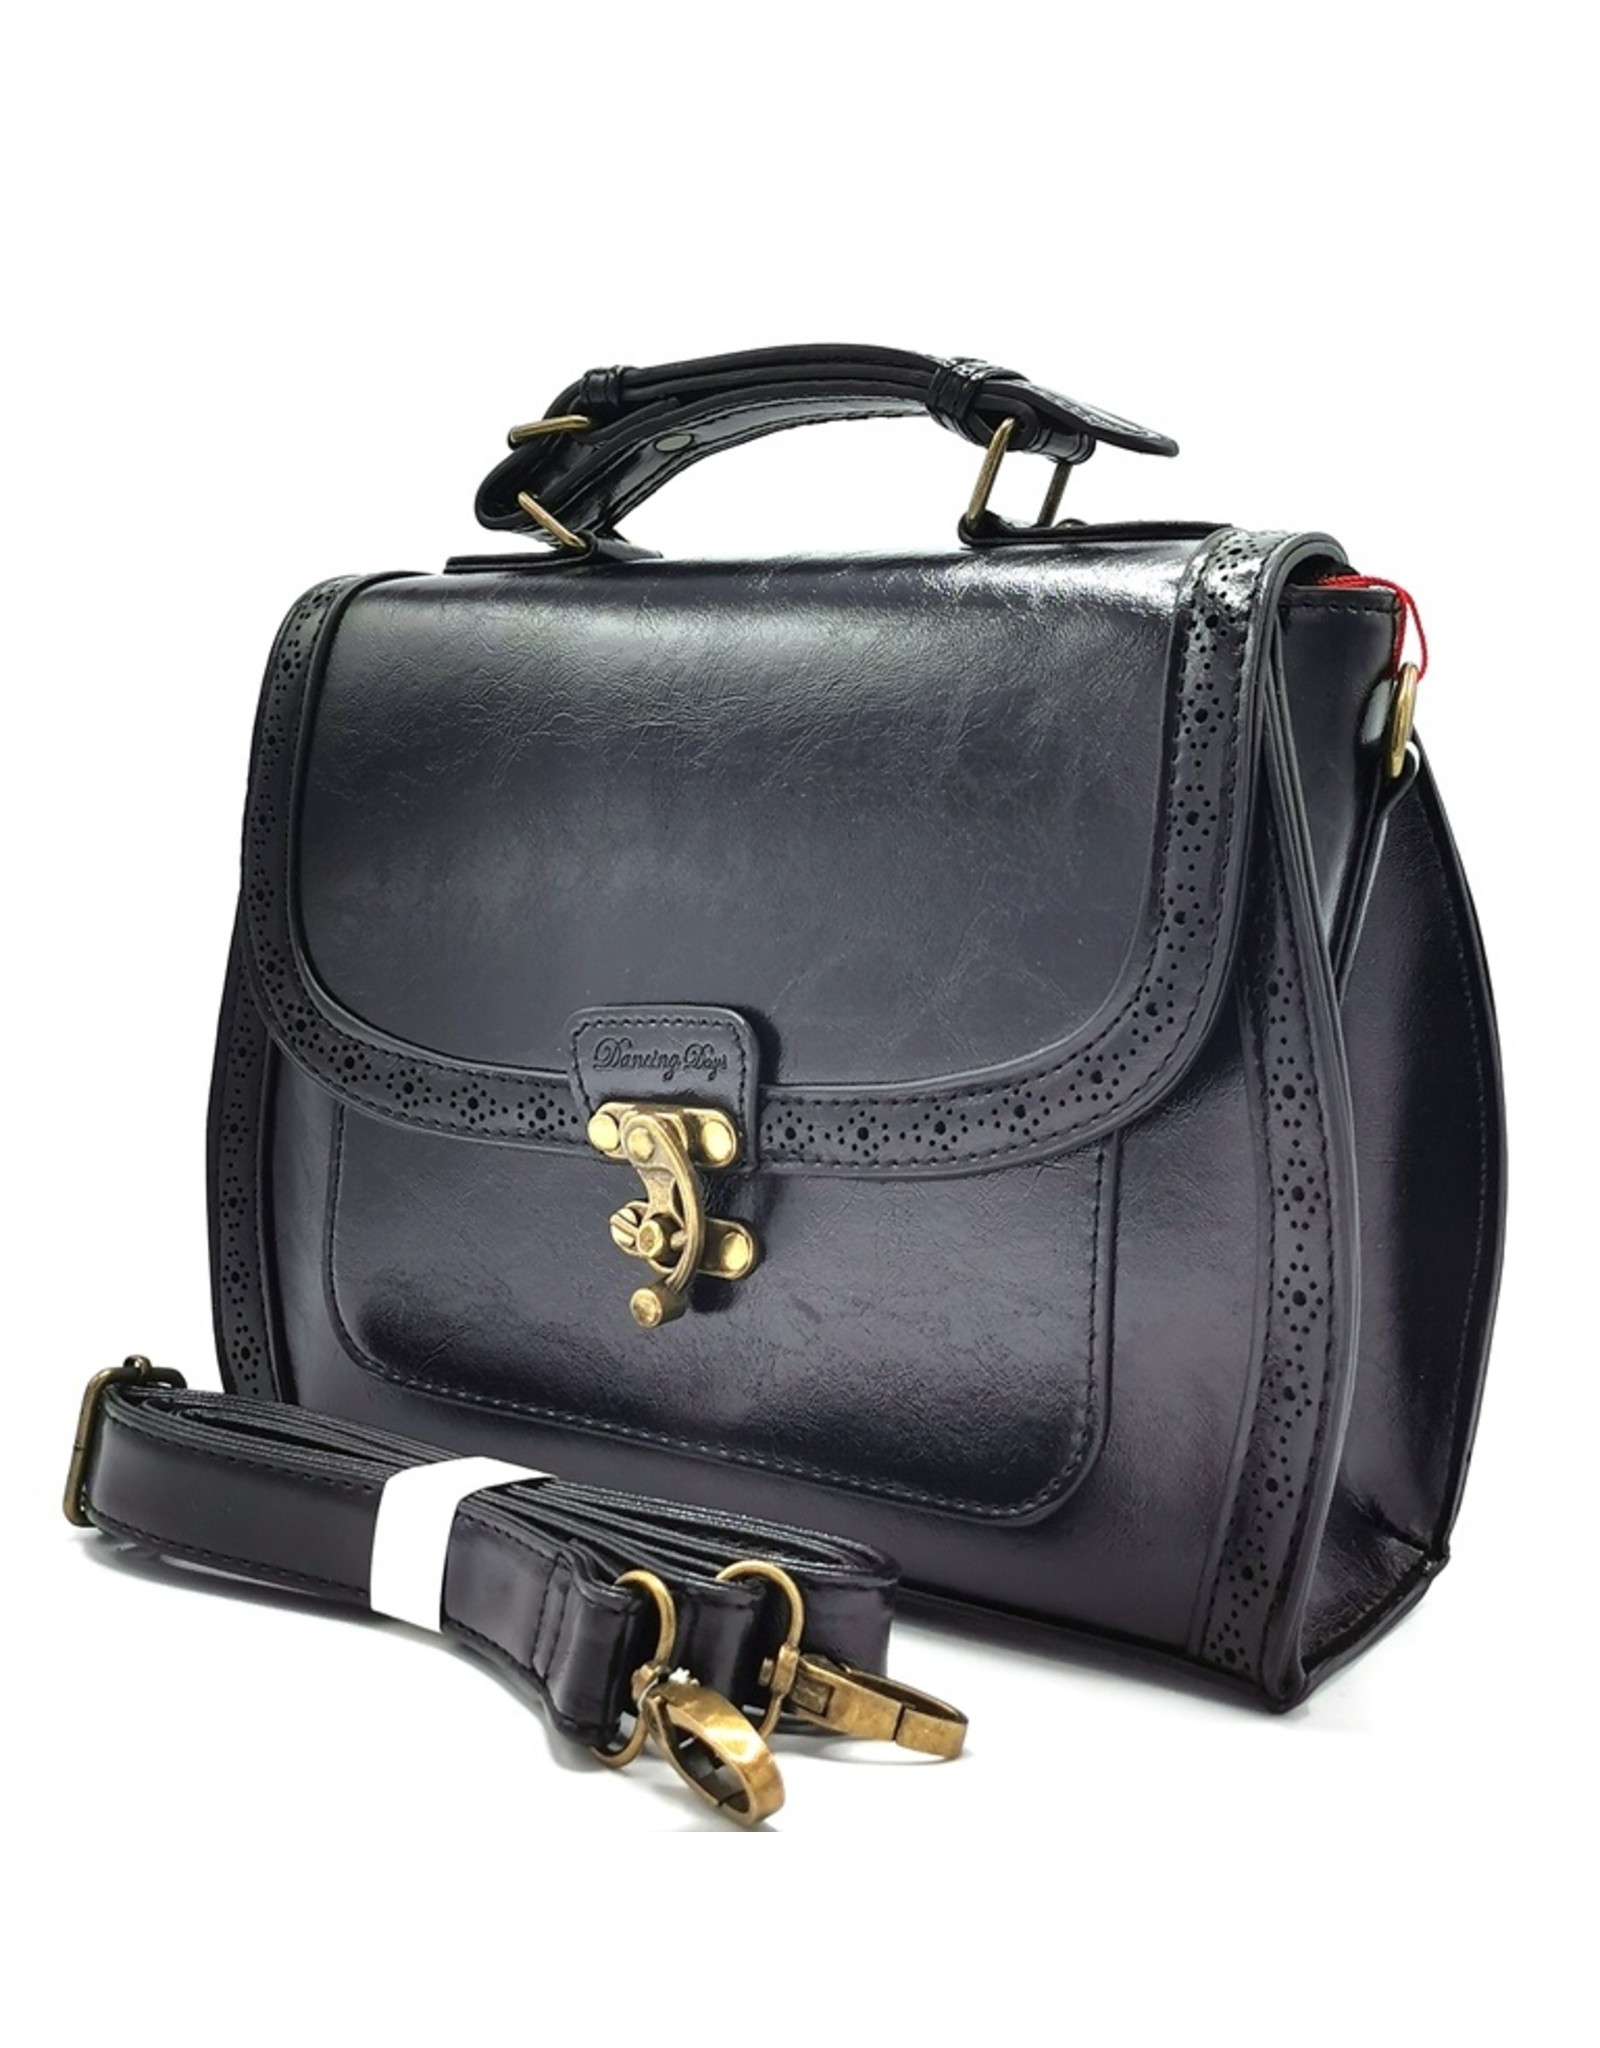 Banned Steampunk bags Gothic bags - Banned Stevie Steampunk handbag black